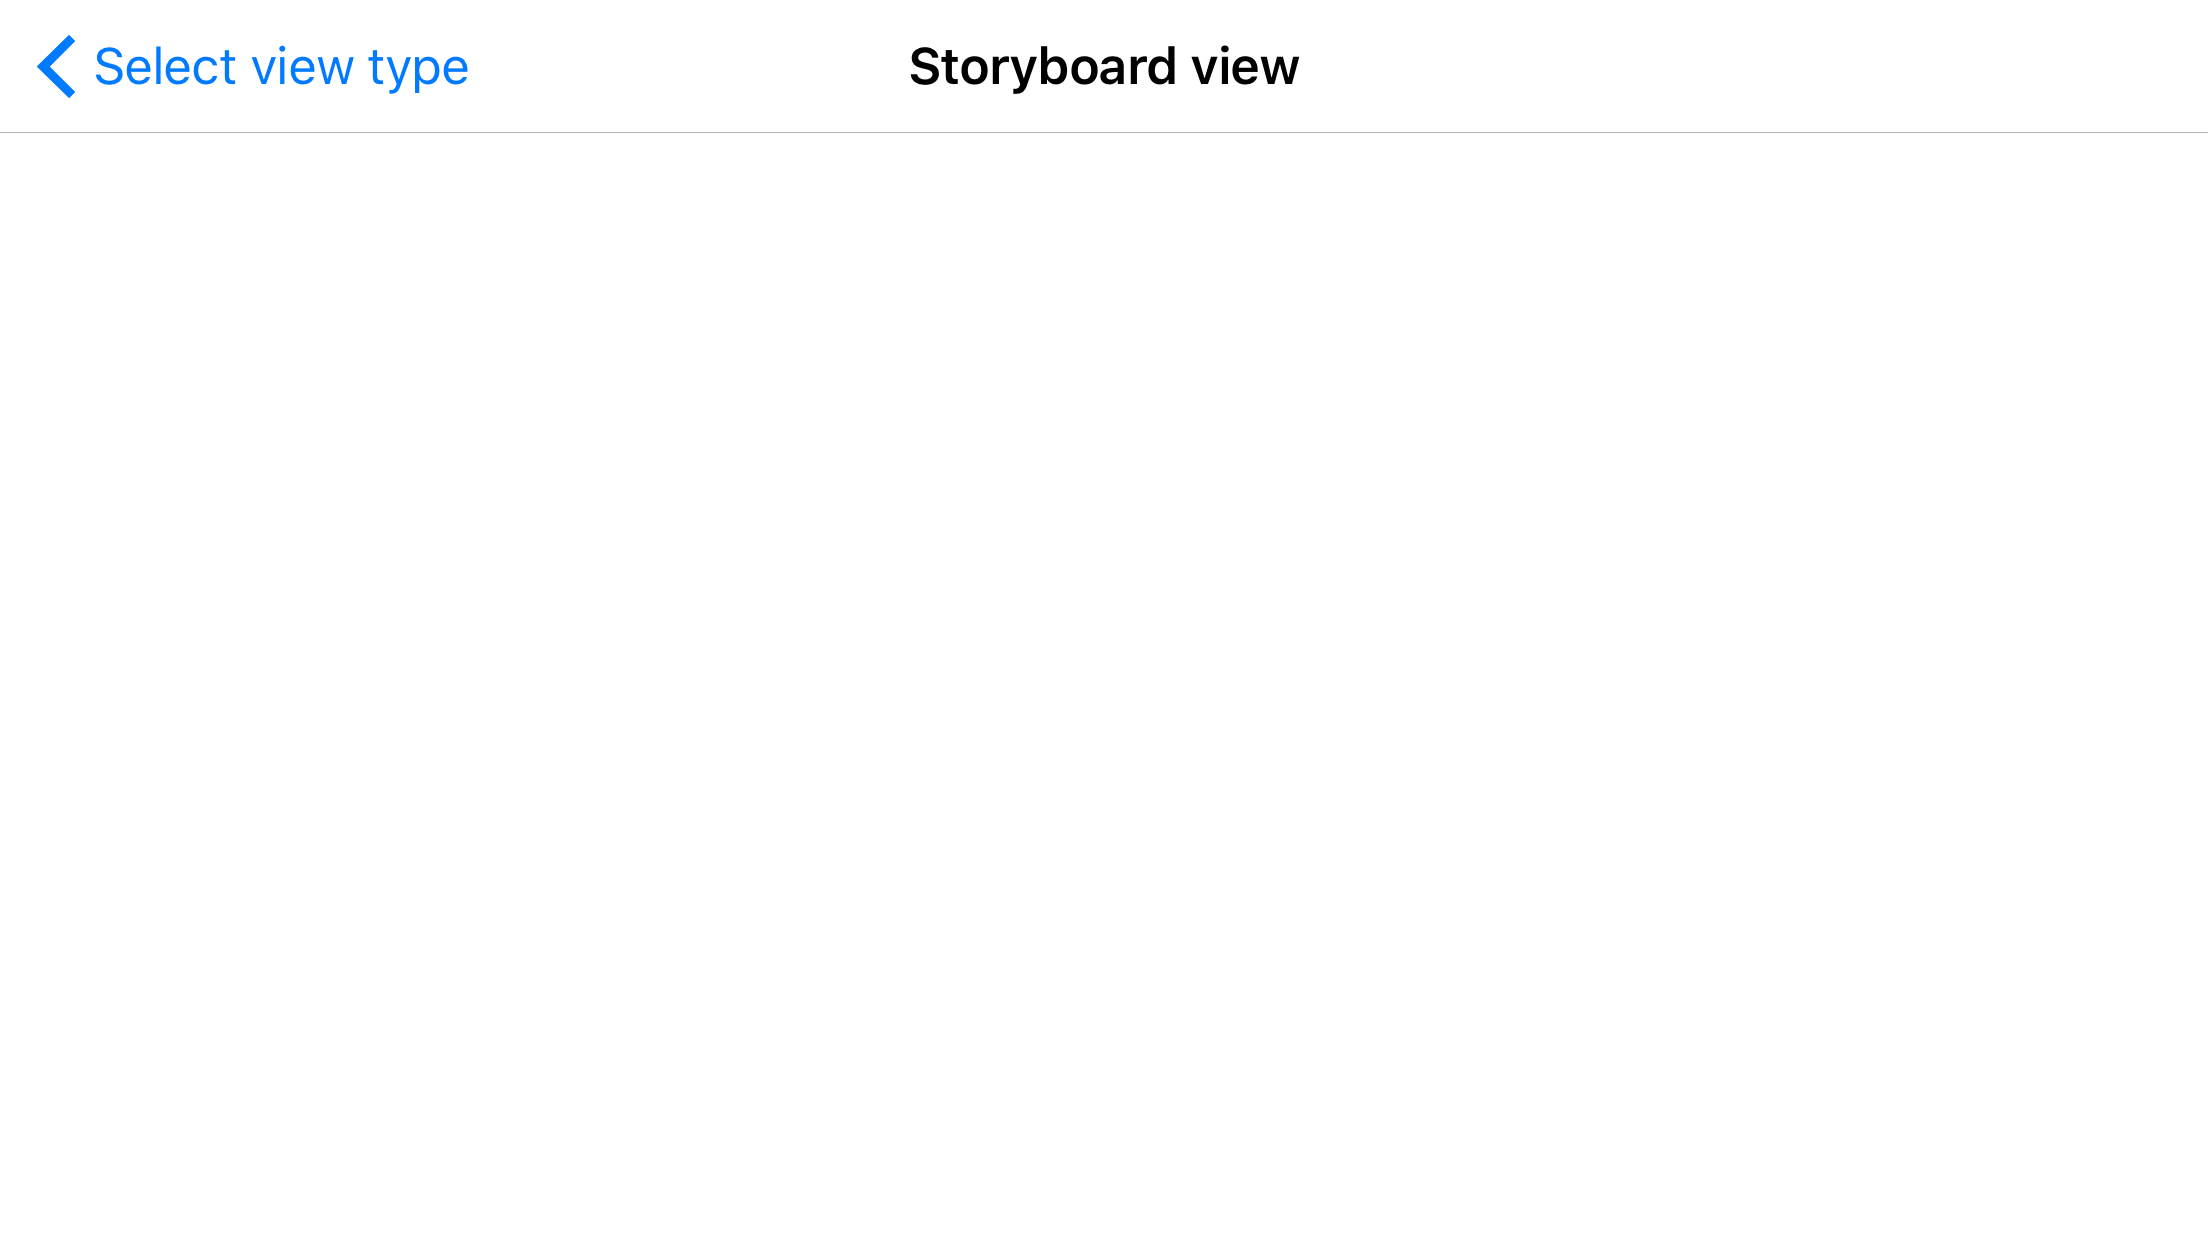 Storybard view